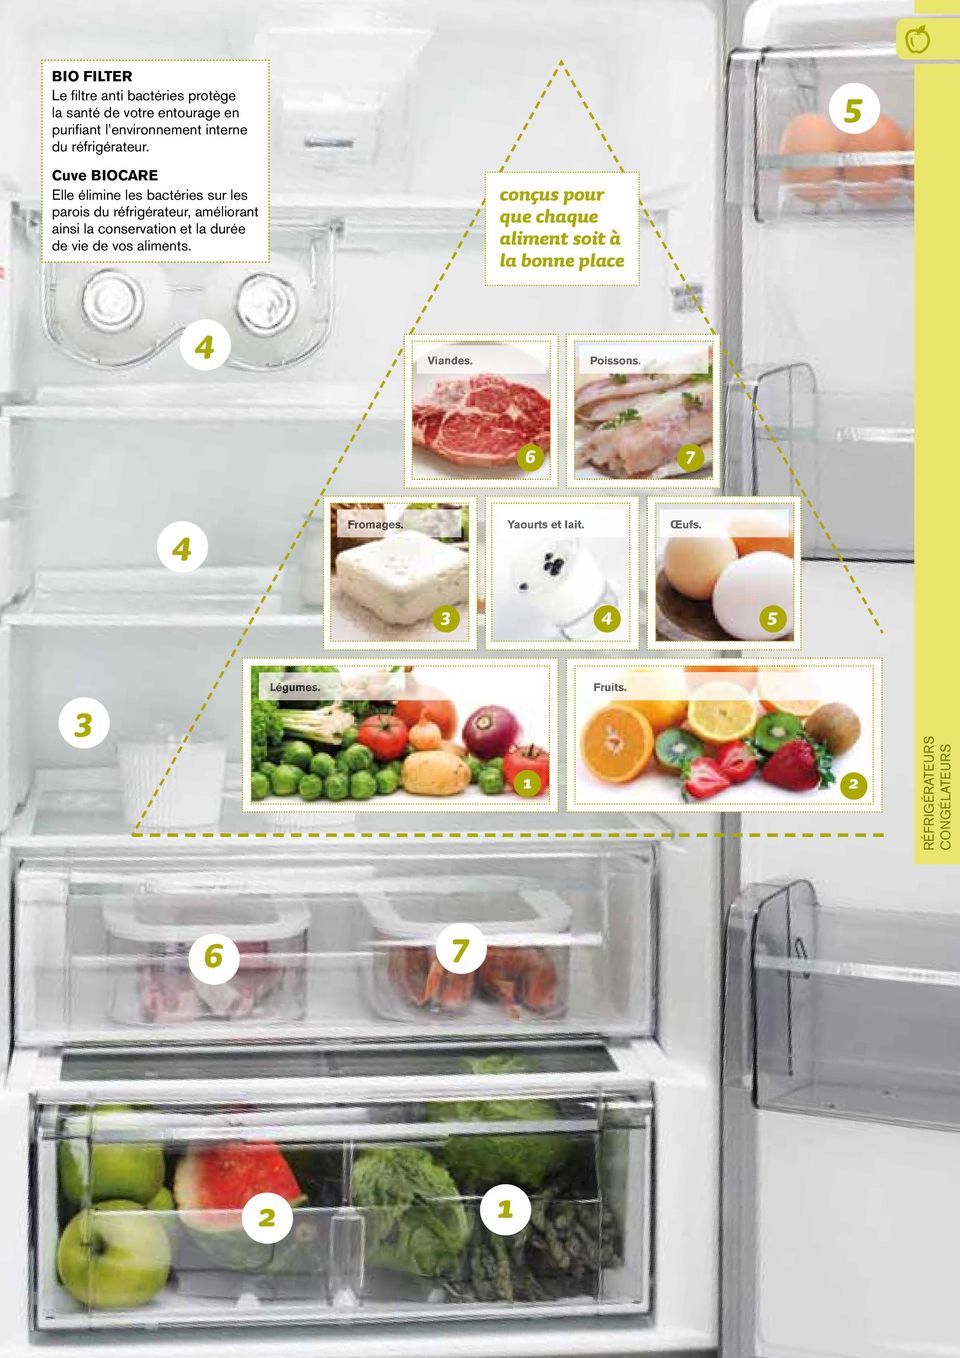 5 Cuve BIOCARE Elle élimine les bactéries sur les parois du réfrigérateur, améliorant ainsi la